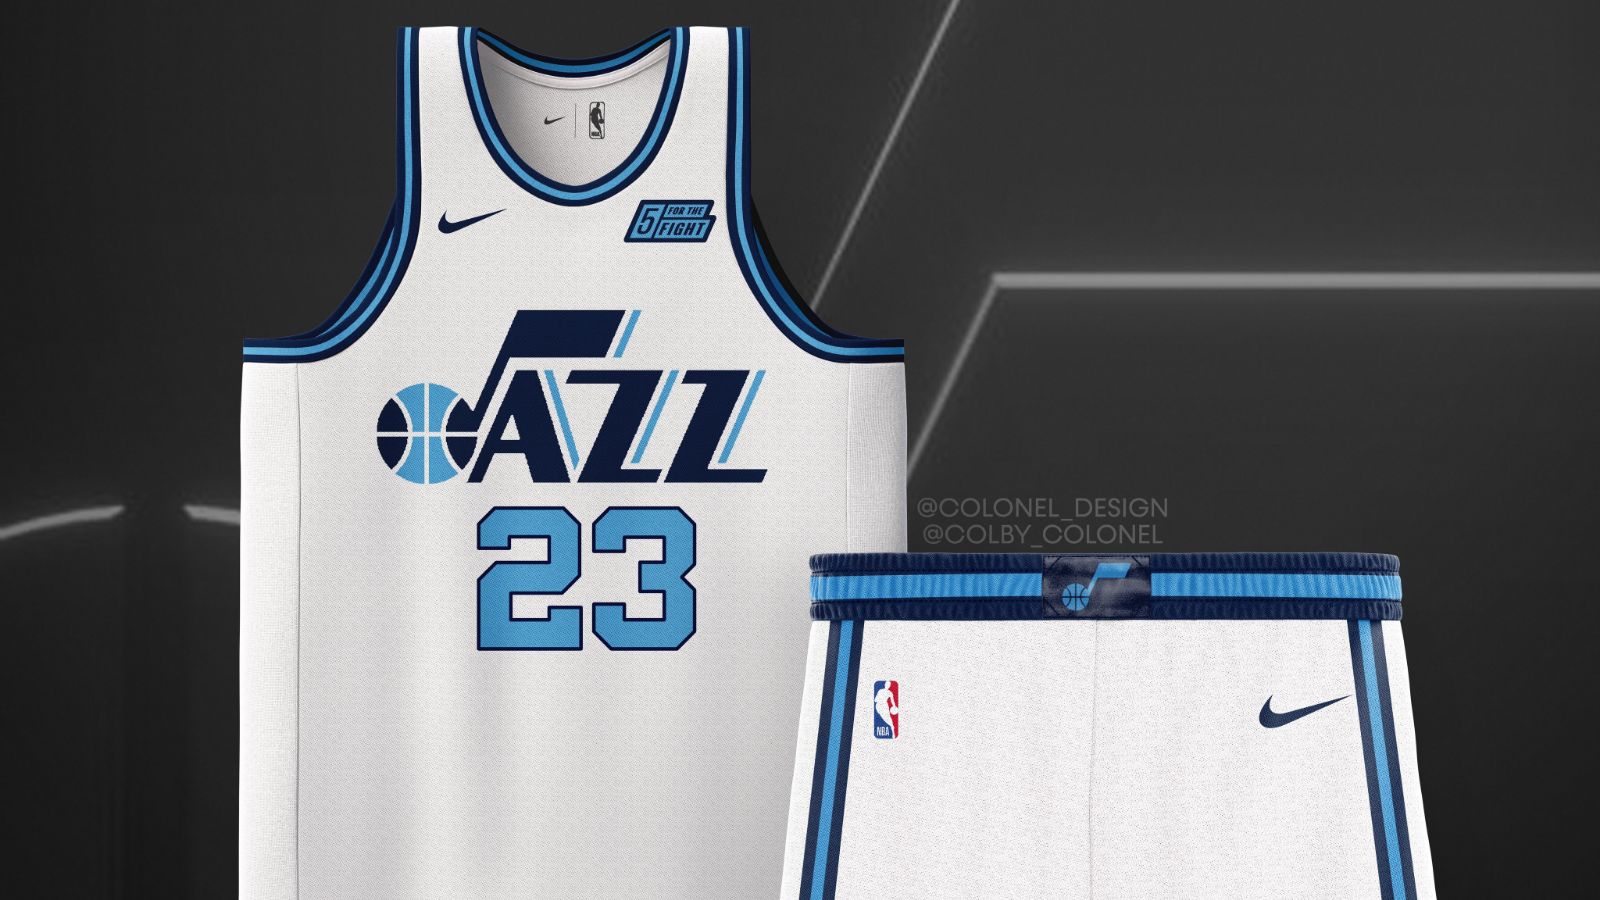 Utah Jazz Rebrand Concept : r/UtahJazz